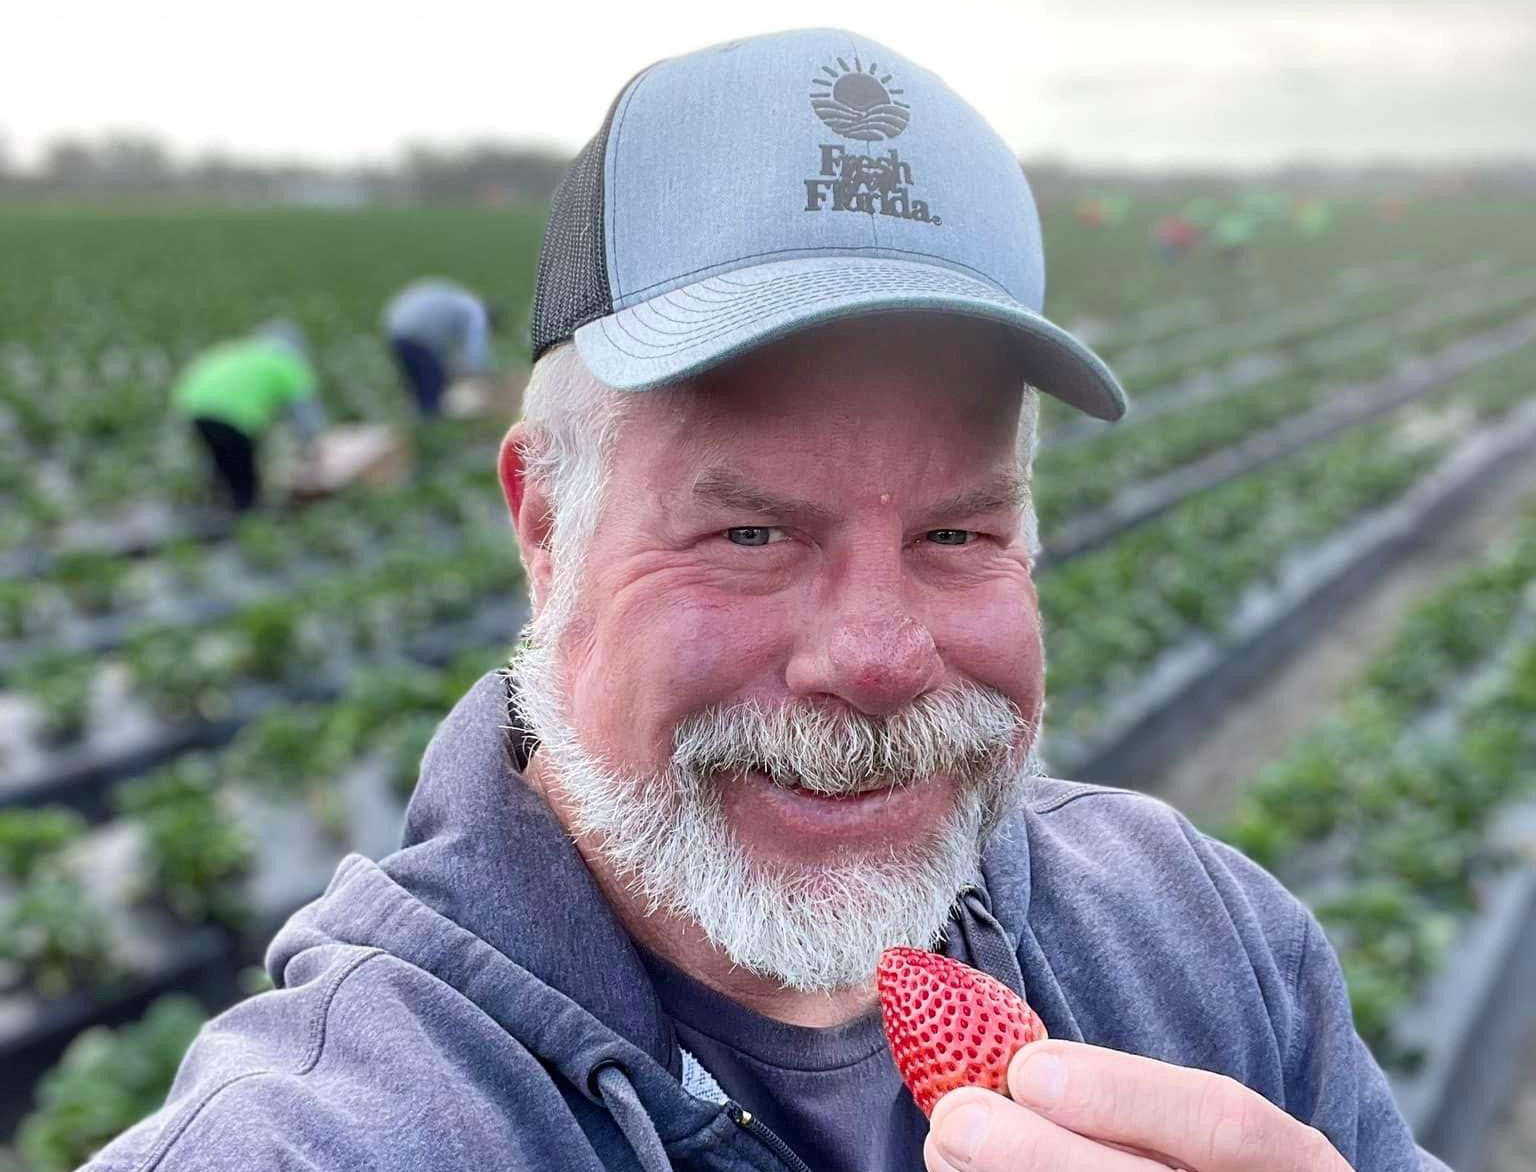 Jeff Blocker standing in a strawberry field smiling.